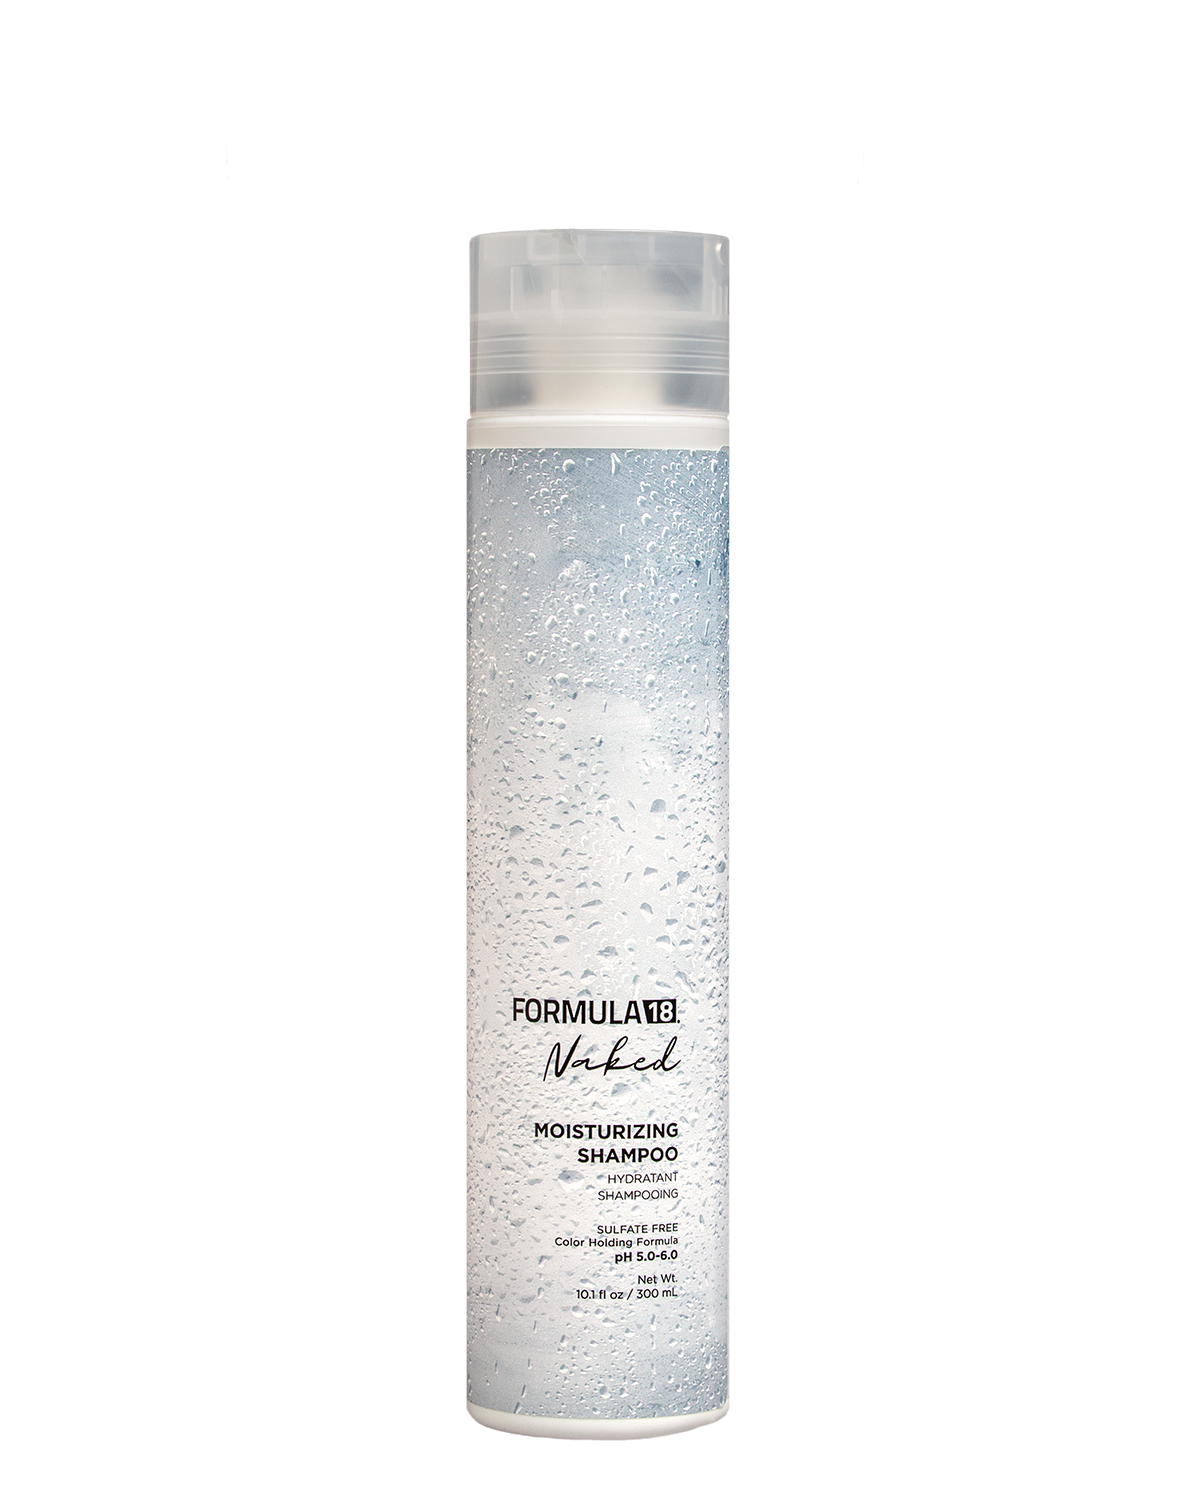 NAKED F18 moisturizing Shampoo